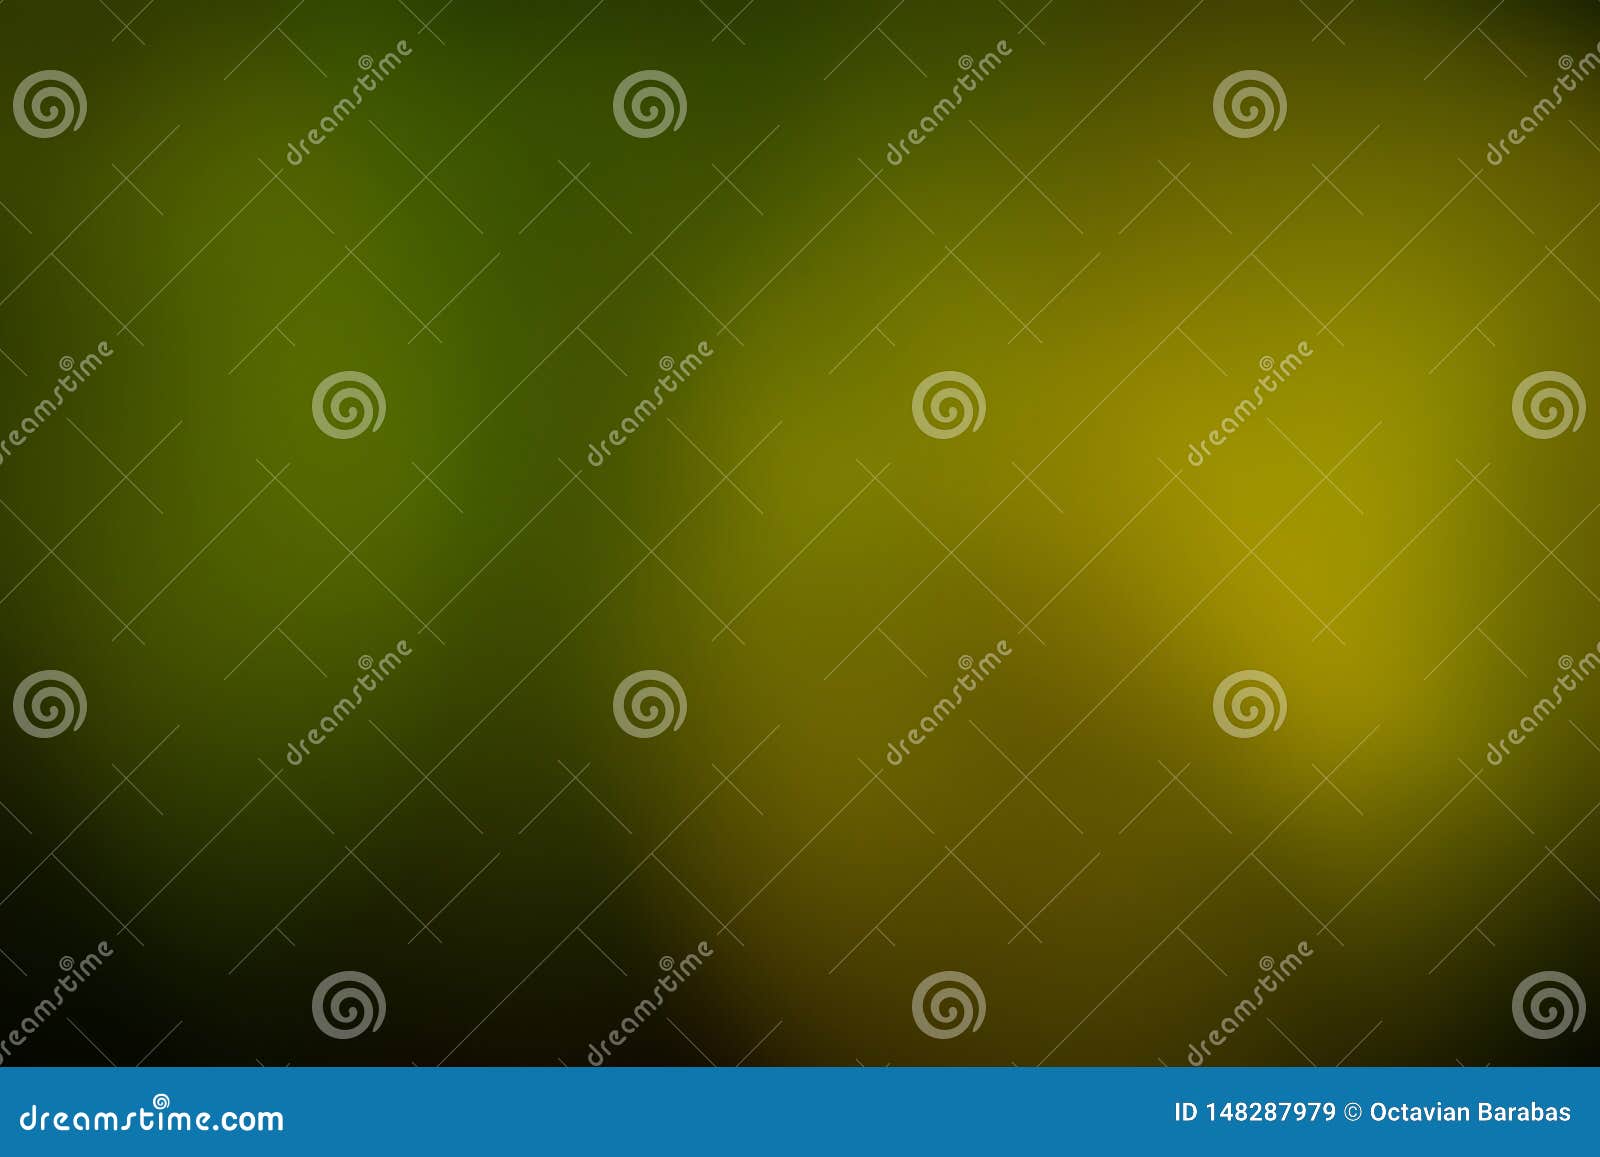 Green, Yellow and Black Smooth and Blurred Wallpaper - Bộ ảnh nền Green, Yellow and Black Smooth and Blurred Wallpaper đầy đủ sắc màu độc lạ, sẽ khiến bạn trở nên bắt mắt và thu hút ngay từ cái nhìn đầu tiên. Chỉnh sửa và tận hưởng những bức ảnh tuyệt đẹp với green editor, và trang trí cho nền điện thoại của bạn.